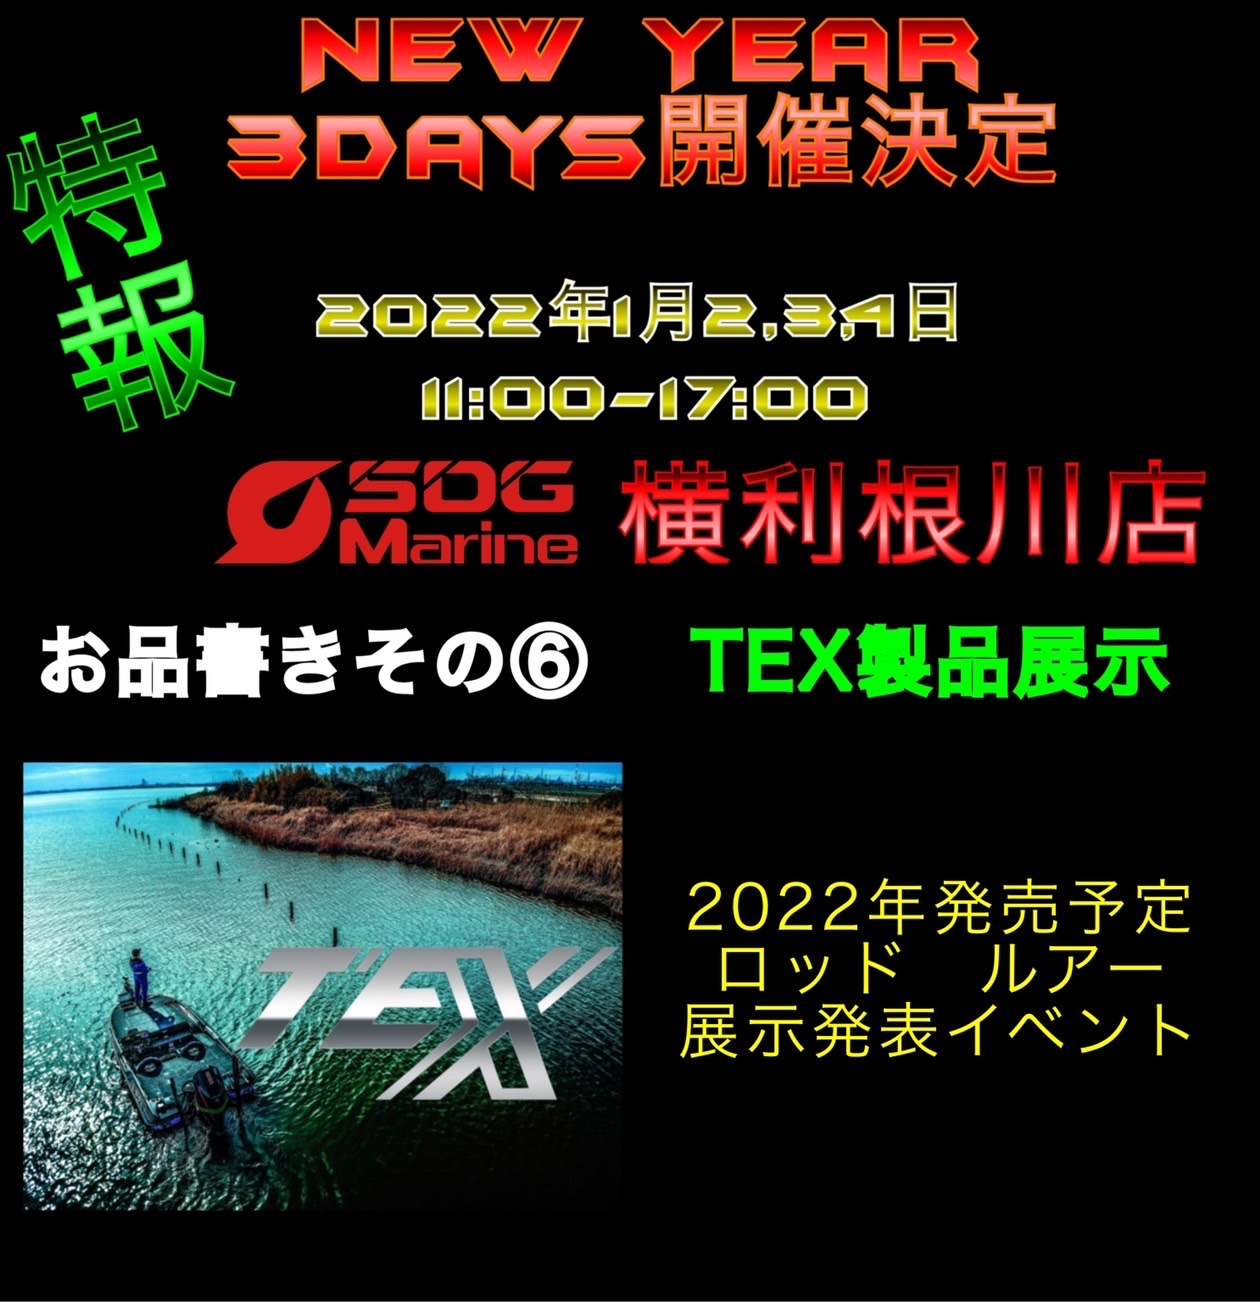 1/2～1/4　SDG-Marine横利根川店にて展示イベントを行います。